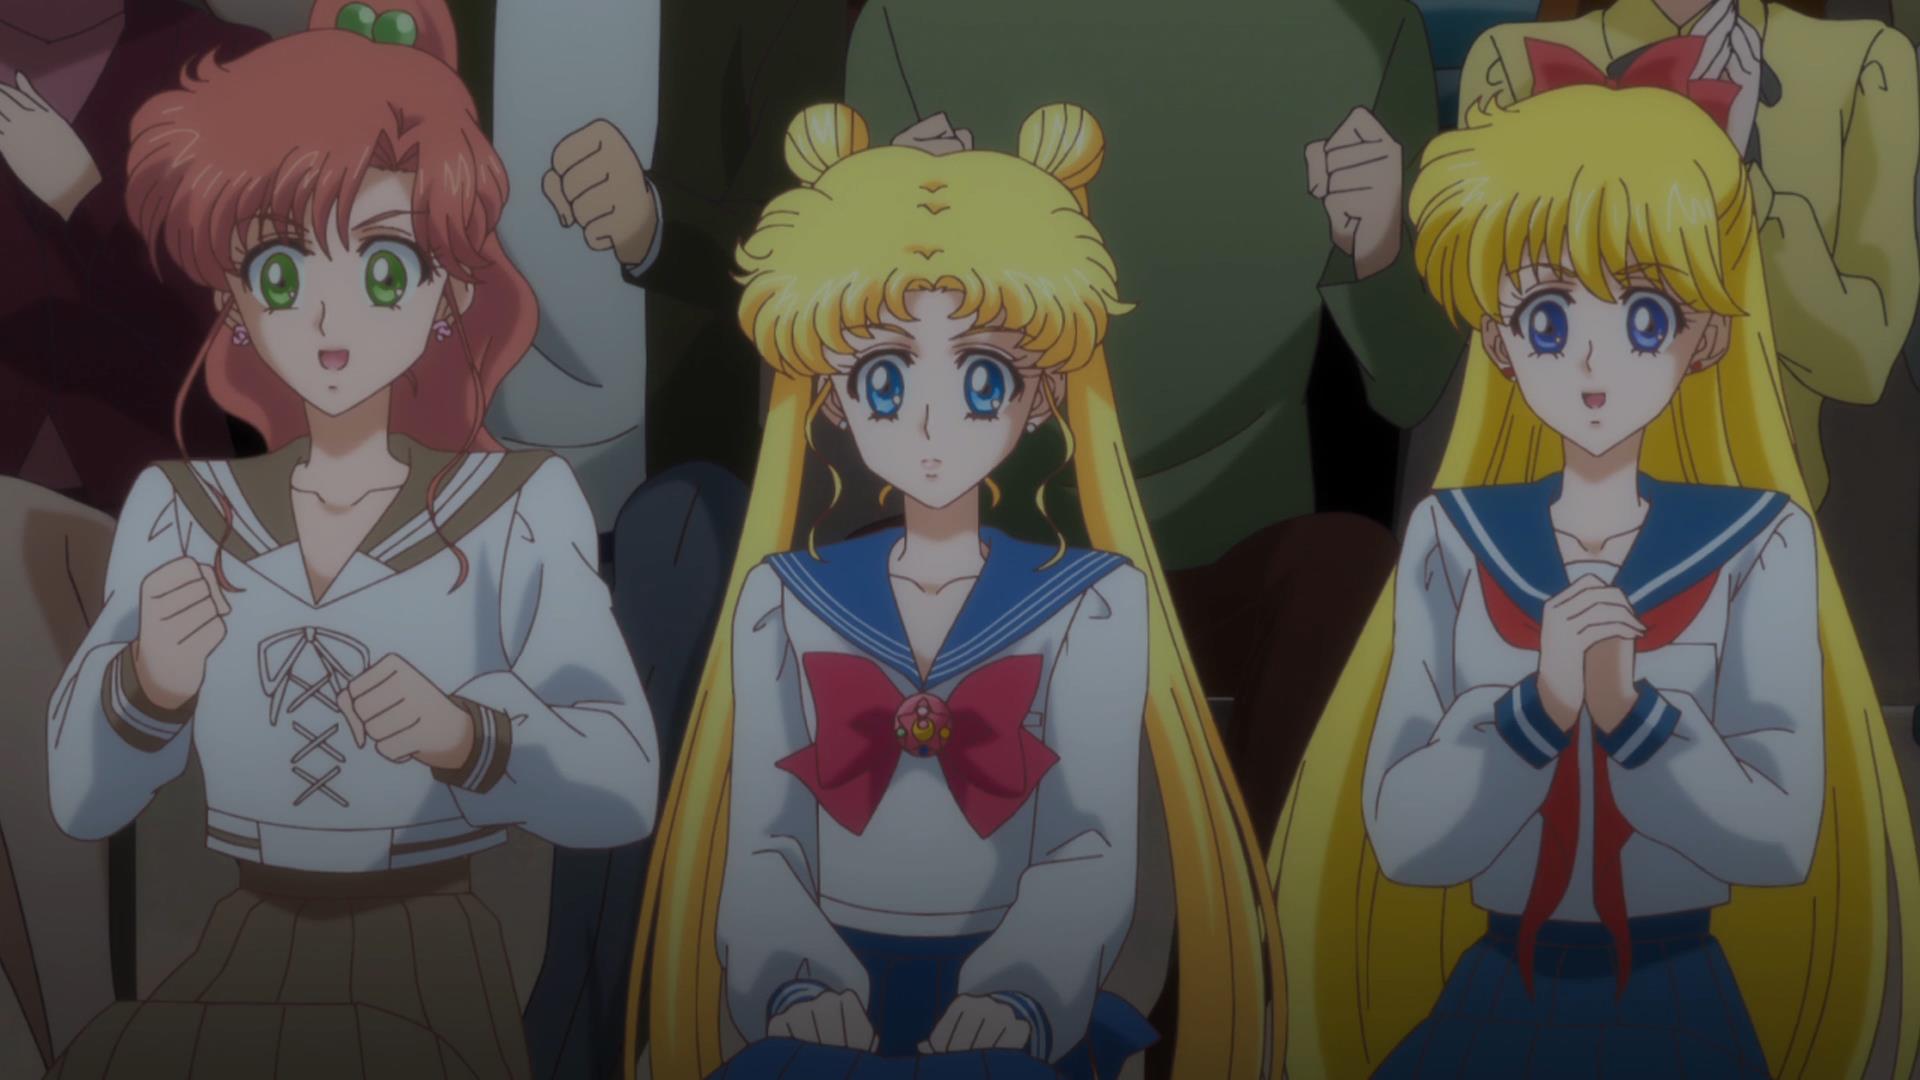 Sailor Moon Crystal - 16